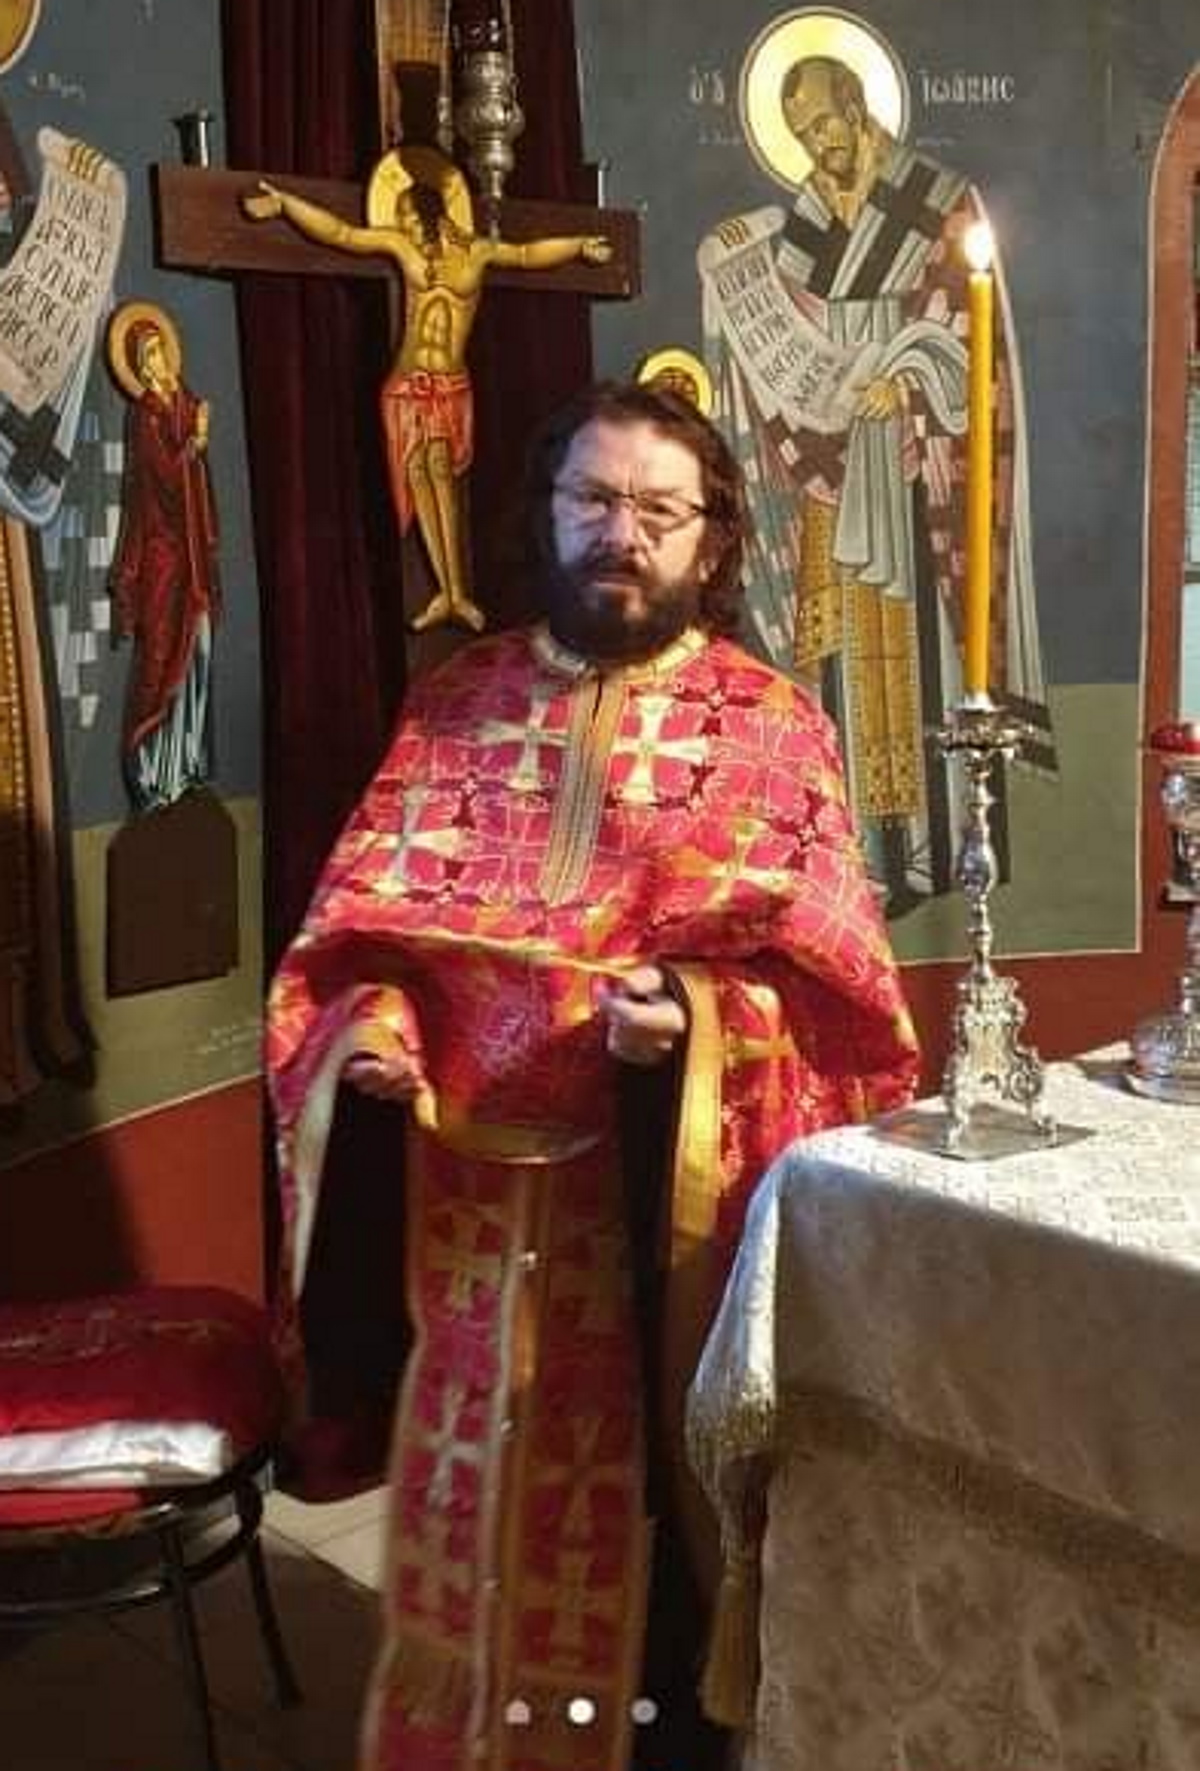 Νίκος Χορταρέας: Από ιερέας, ξανά στην Τηλεμαντεία – Έβγαλε τα ράσα τέσσερα χρόνια μετά